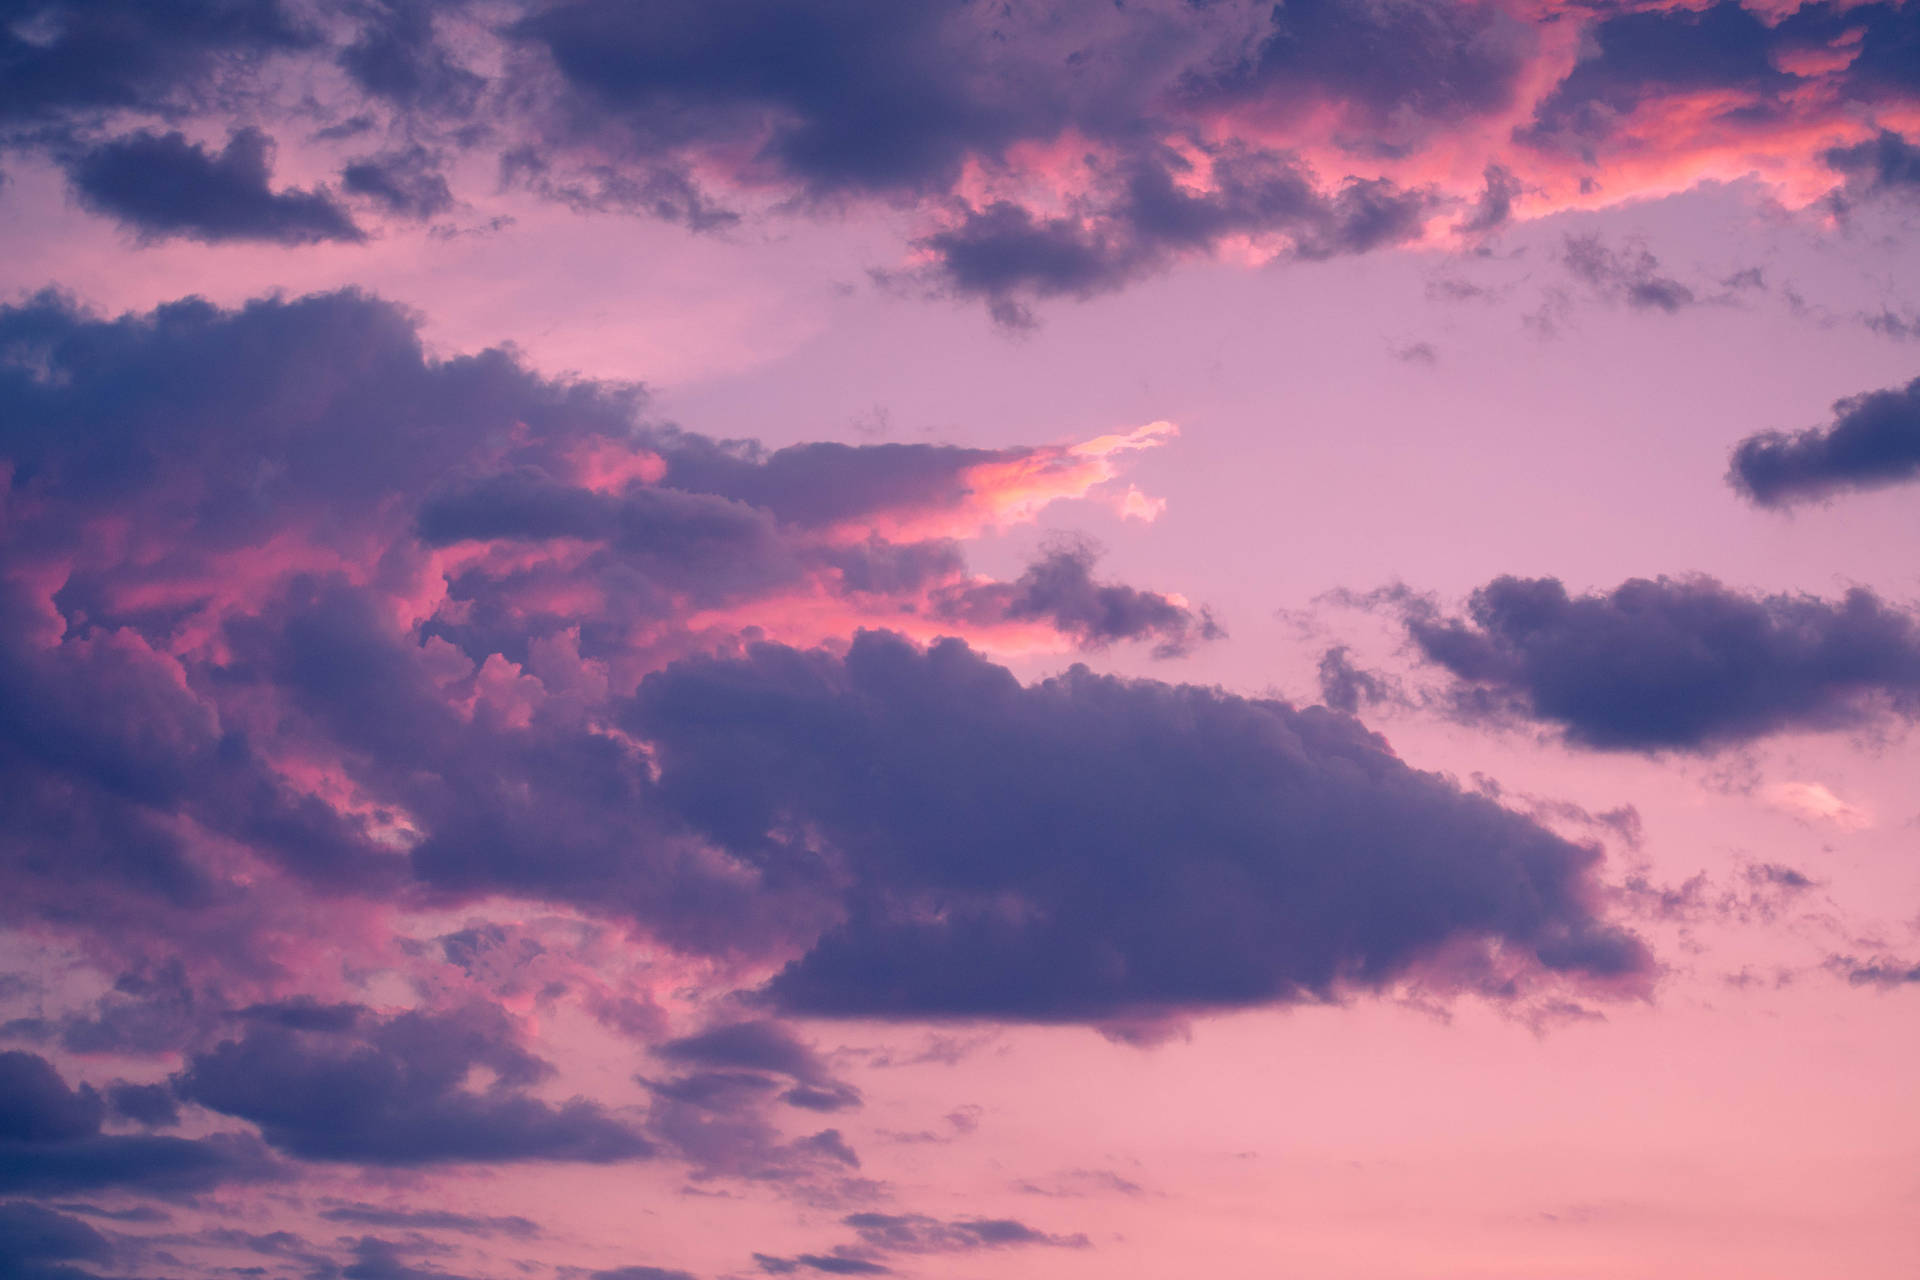 Download Pink Sky Aesthetic Cloud Desktop Wallpaper | Wallpapers.com